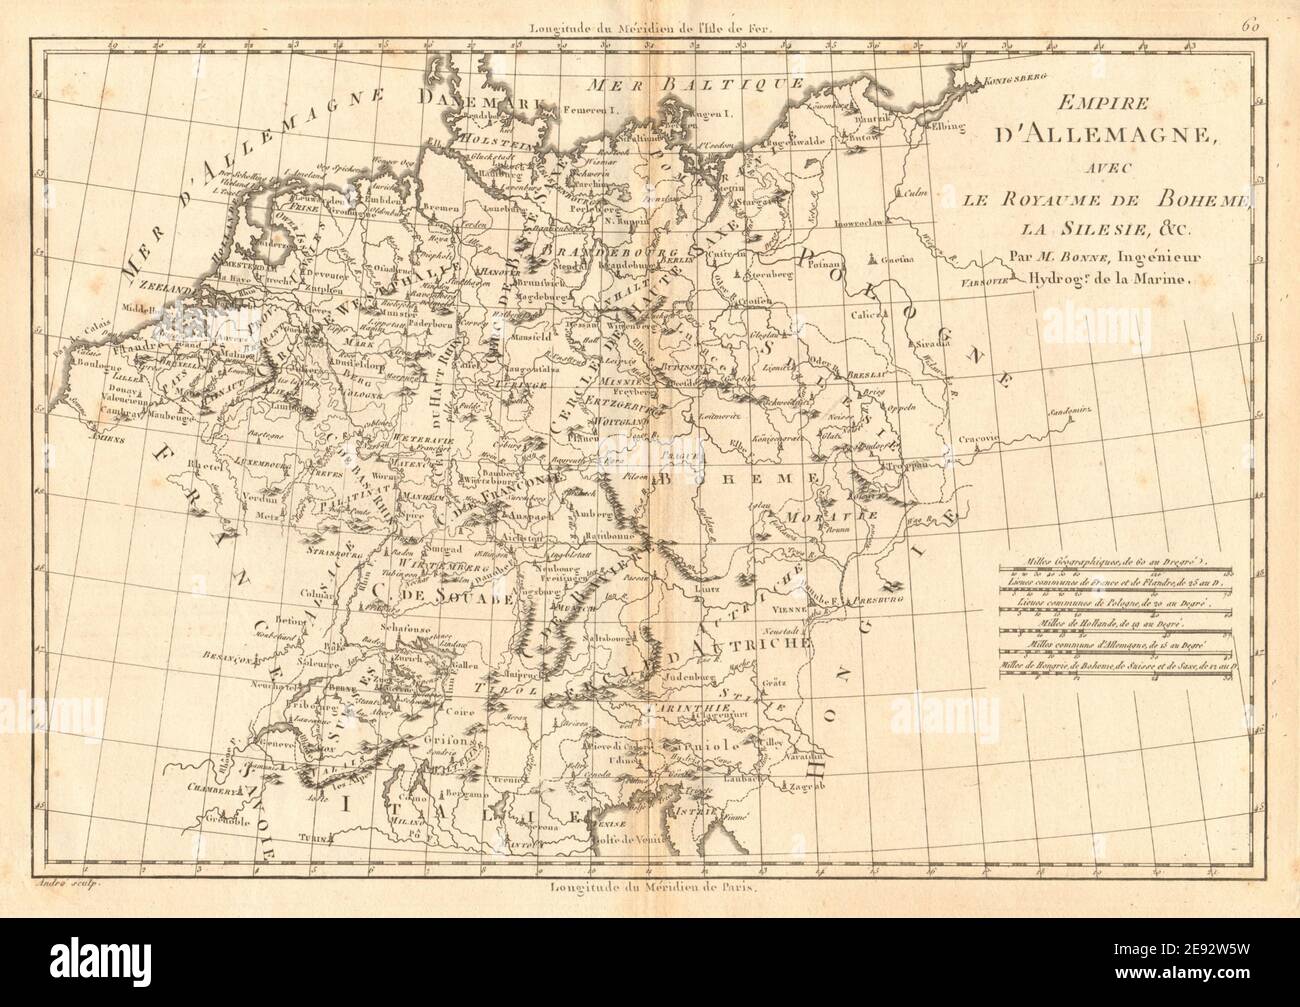 Empire d'Allemagne avec le Royaume de Boheme, la Silesie. Germany BONNE 1787 map Stock Photo